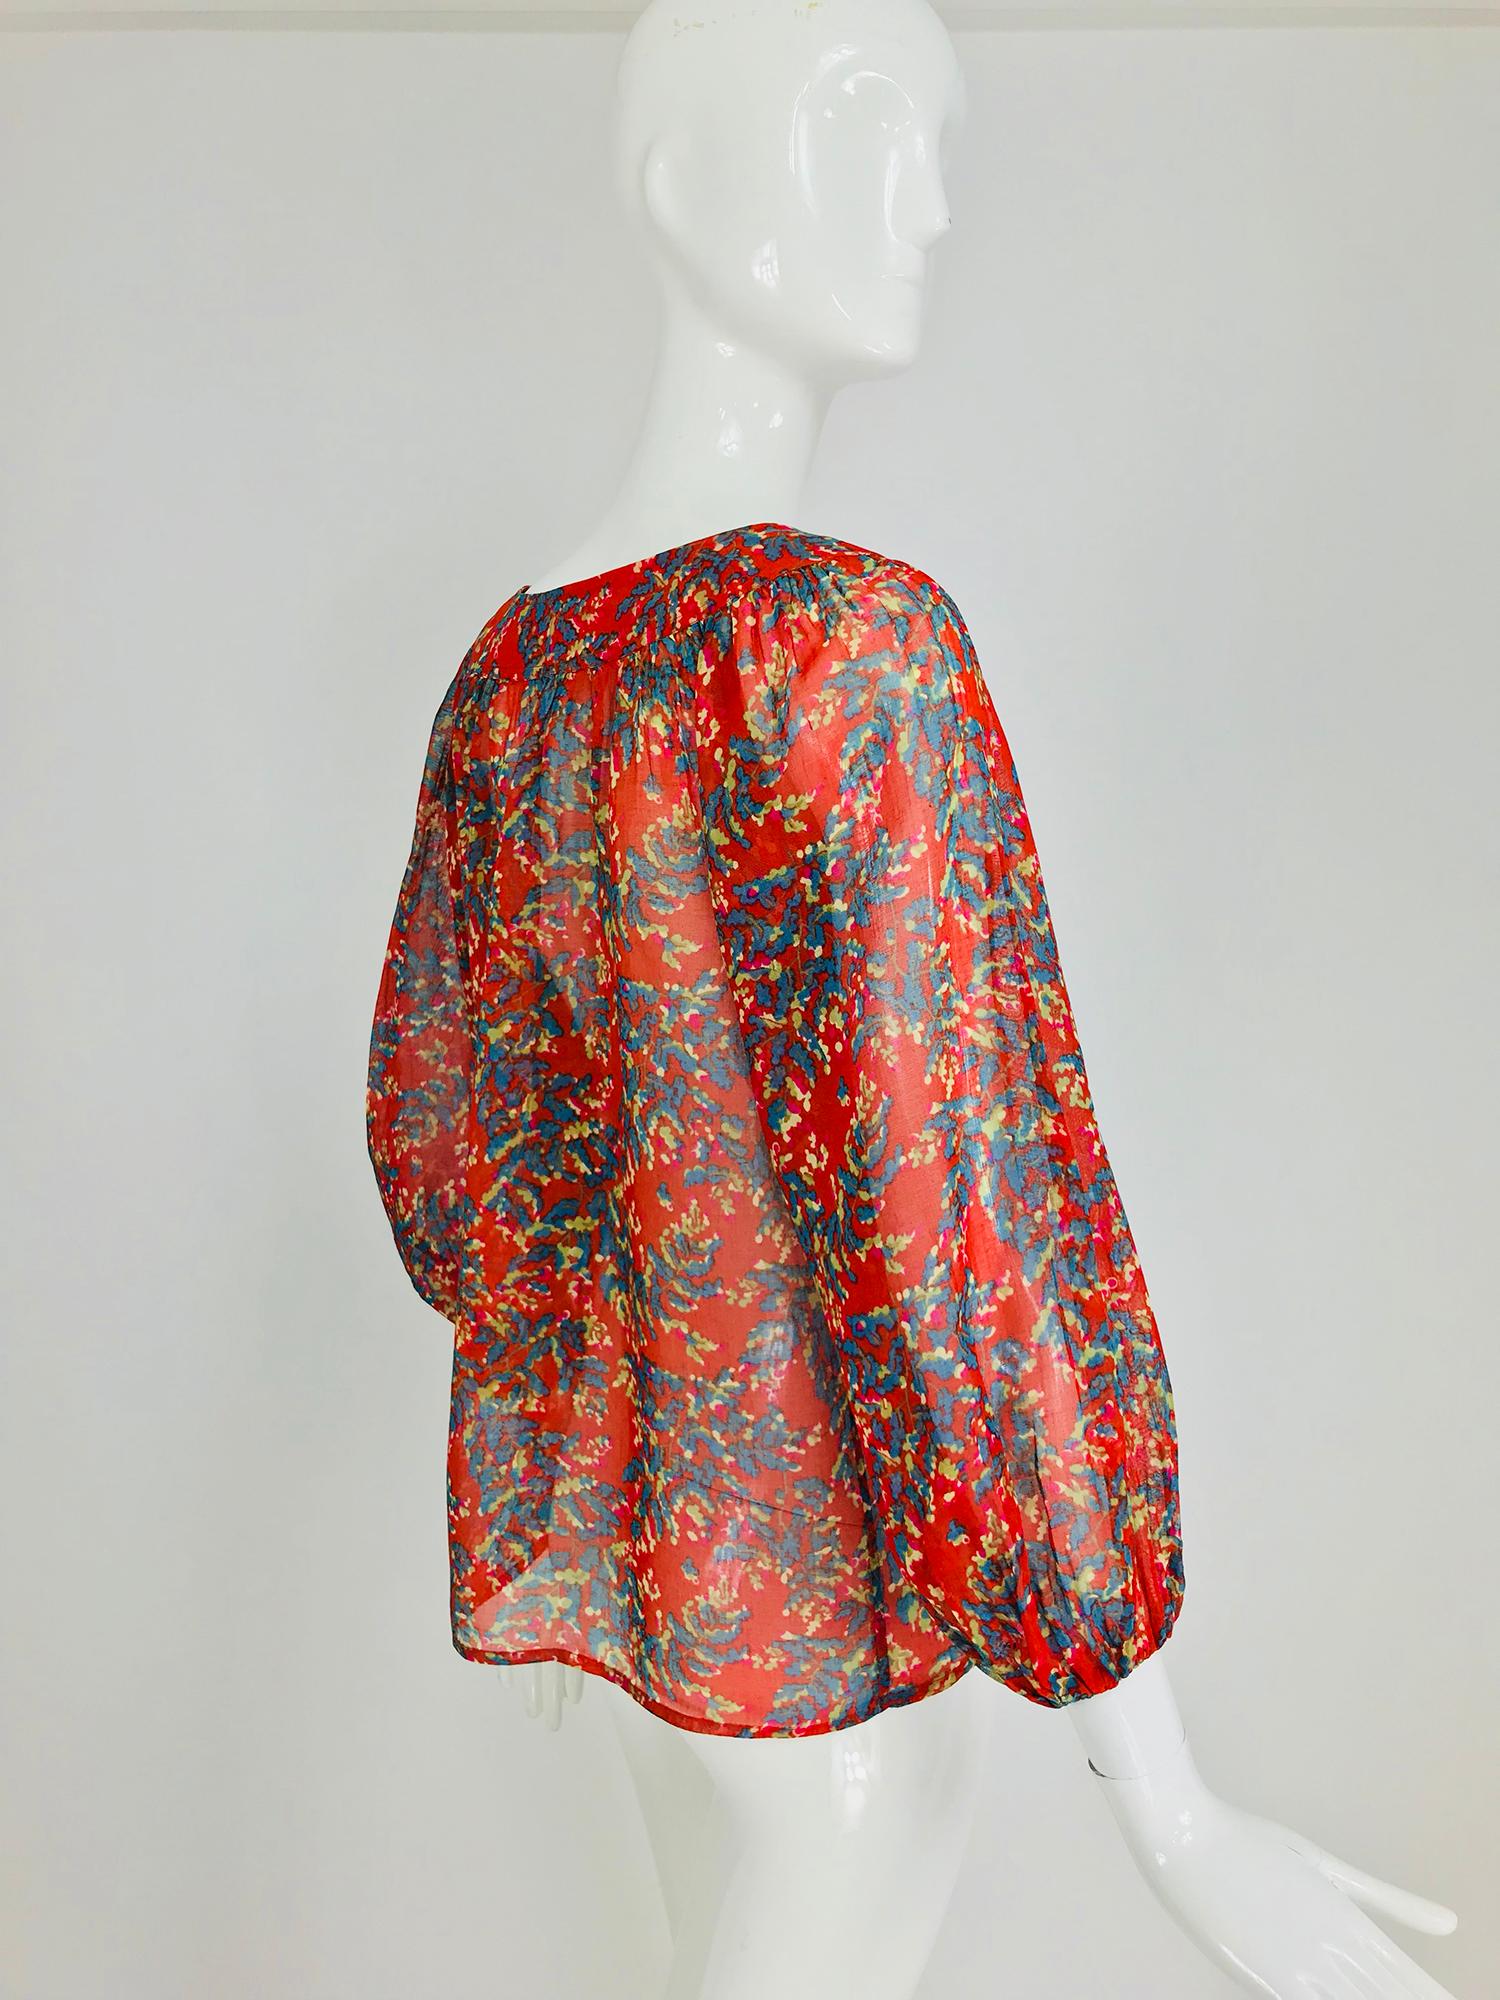 Yves Saint Laurent sheer floral cotton peasant blouse 1970s 5